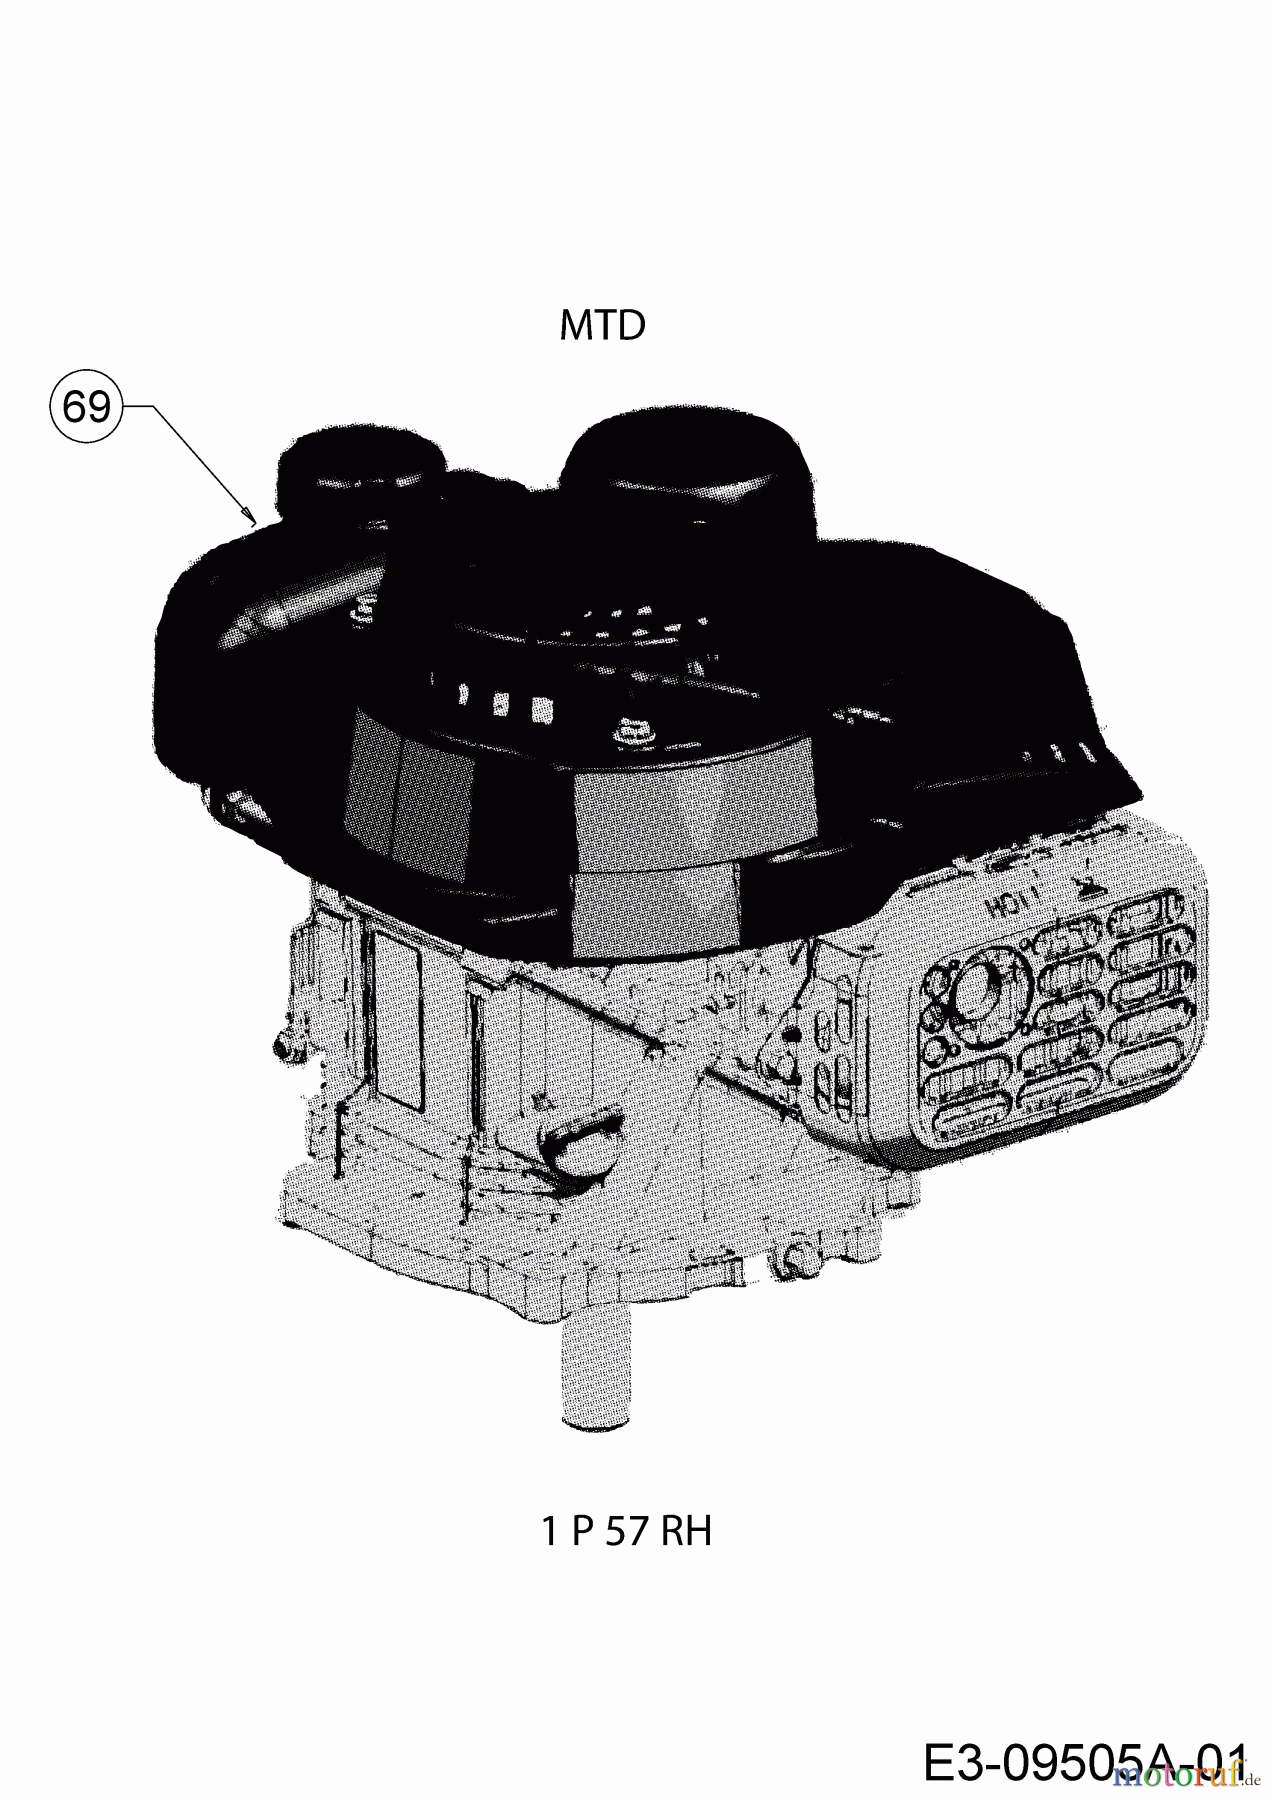  MTD Petrol mower Smart 46 PO 11C-TASJ600 (2019) Engine MTD